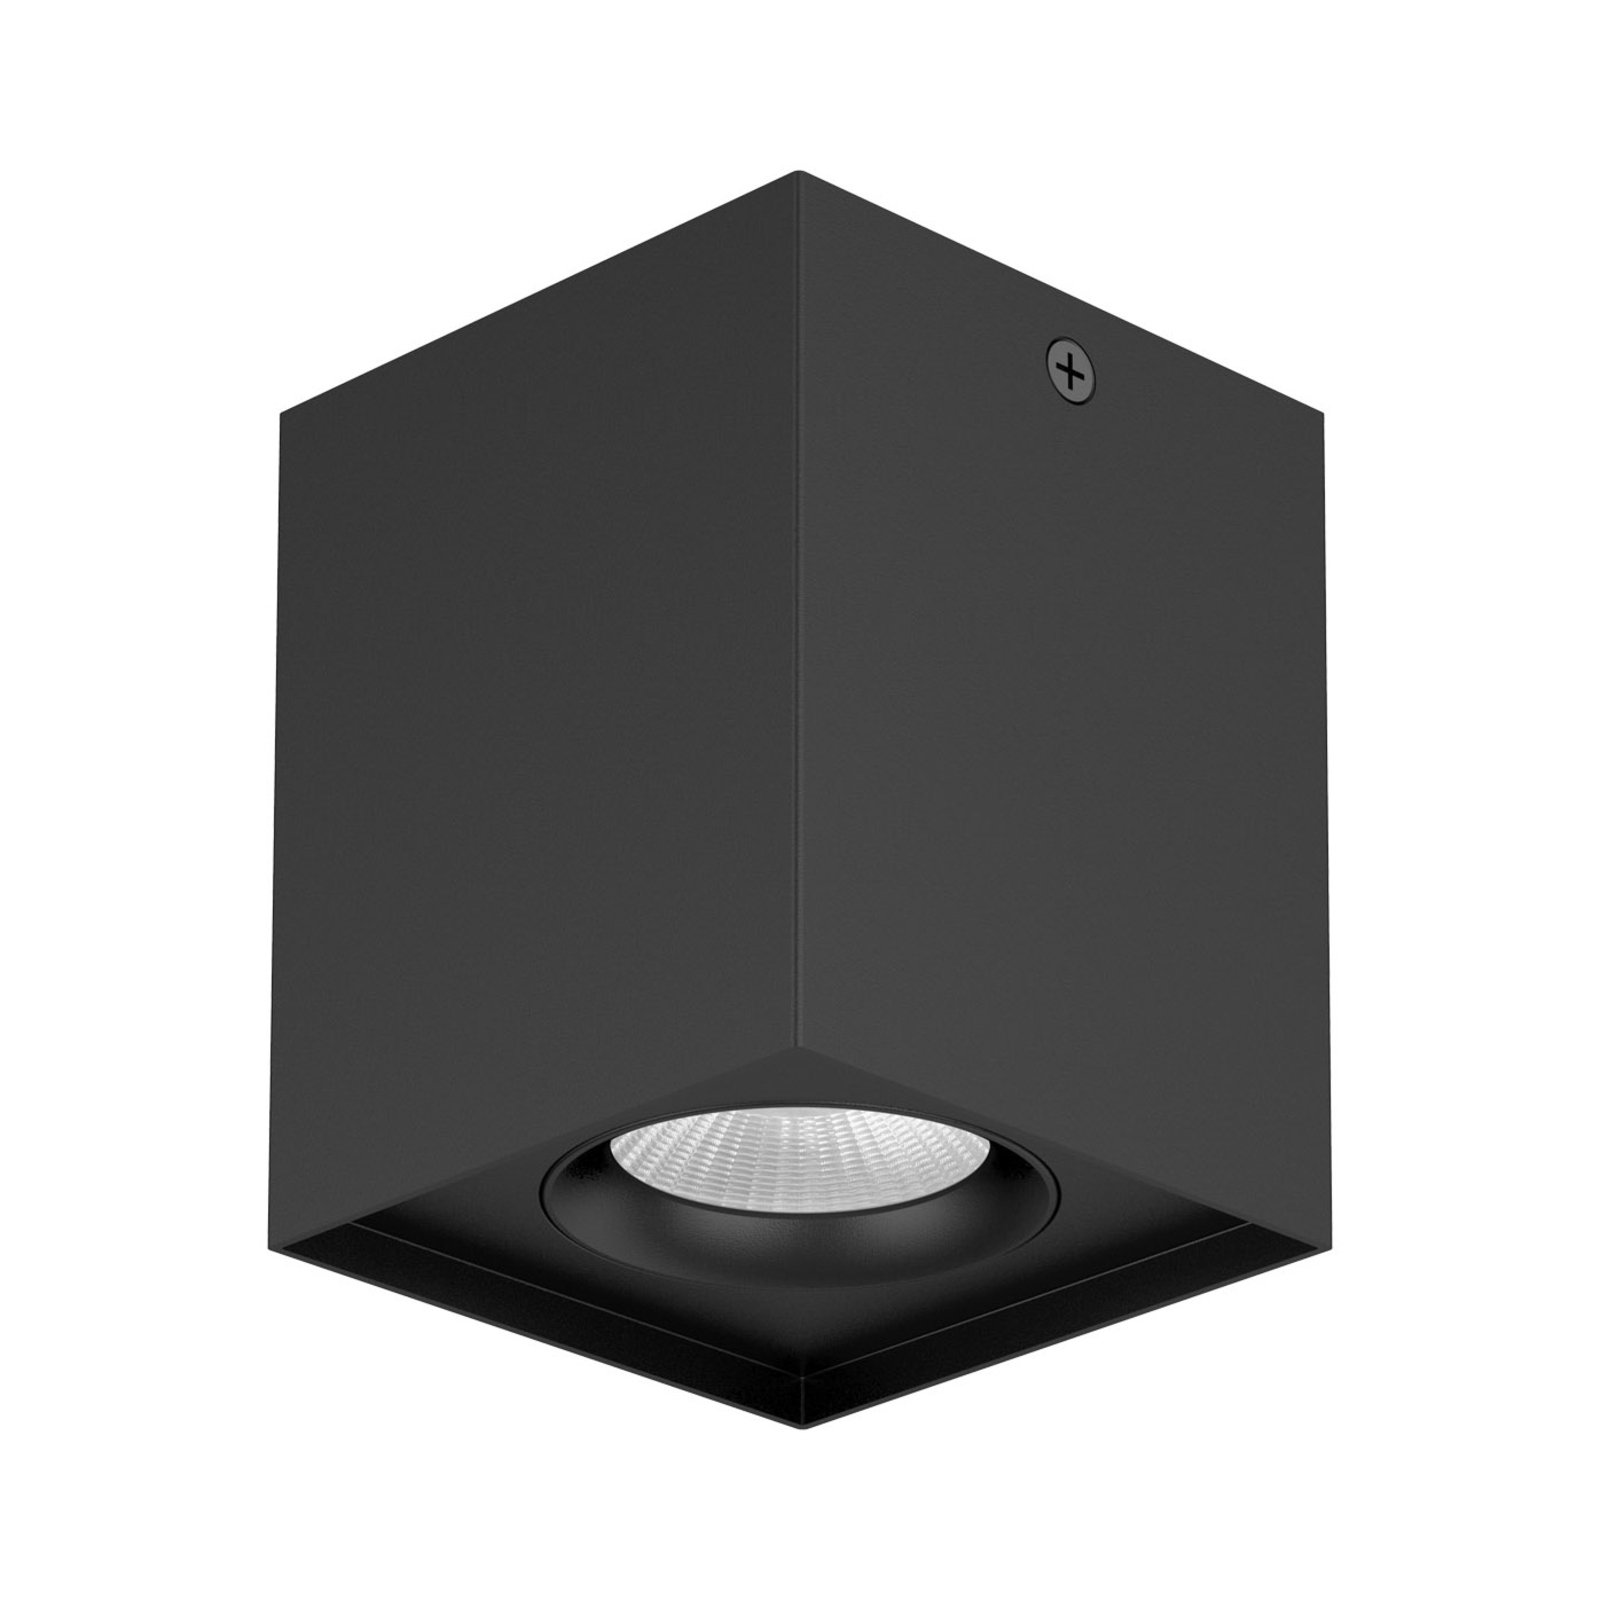 EVN Kardanus LED stropní světlo, 9x9cm, černá